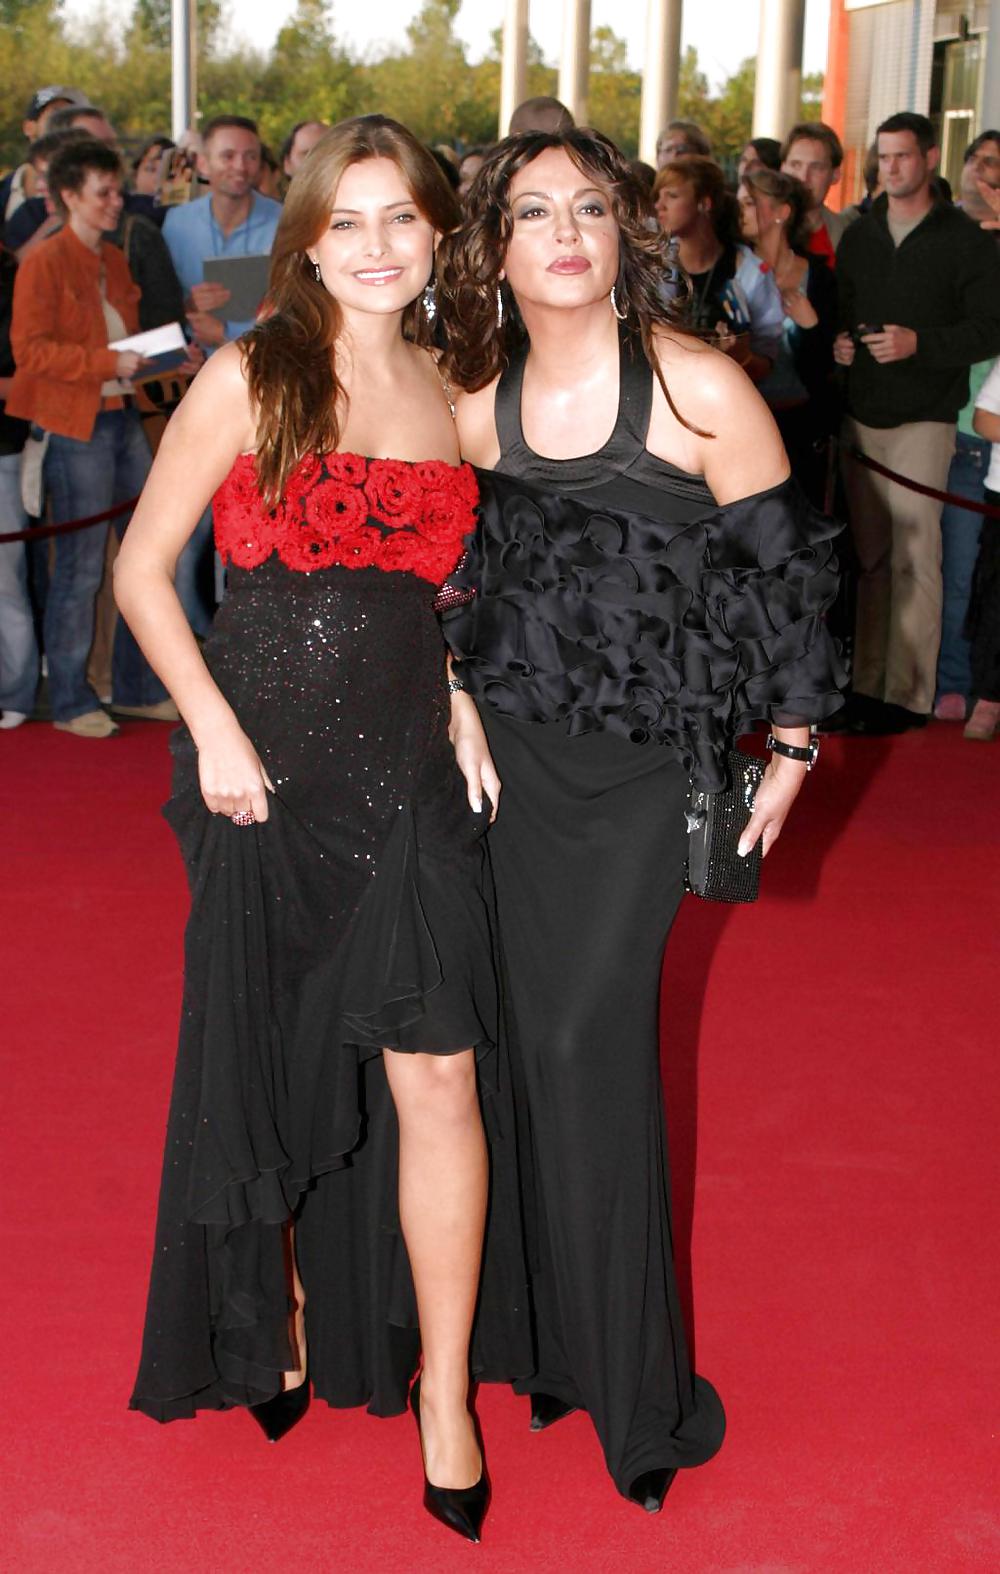 Mamma e figlia: simone & sophia thomalla (celebrità tedesche)
 #6081485